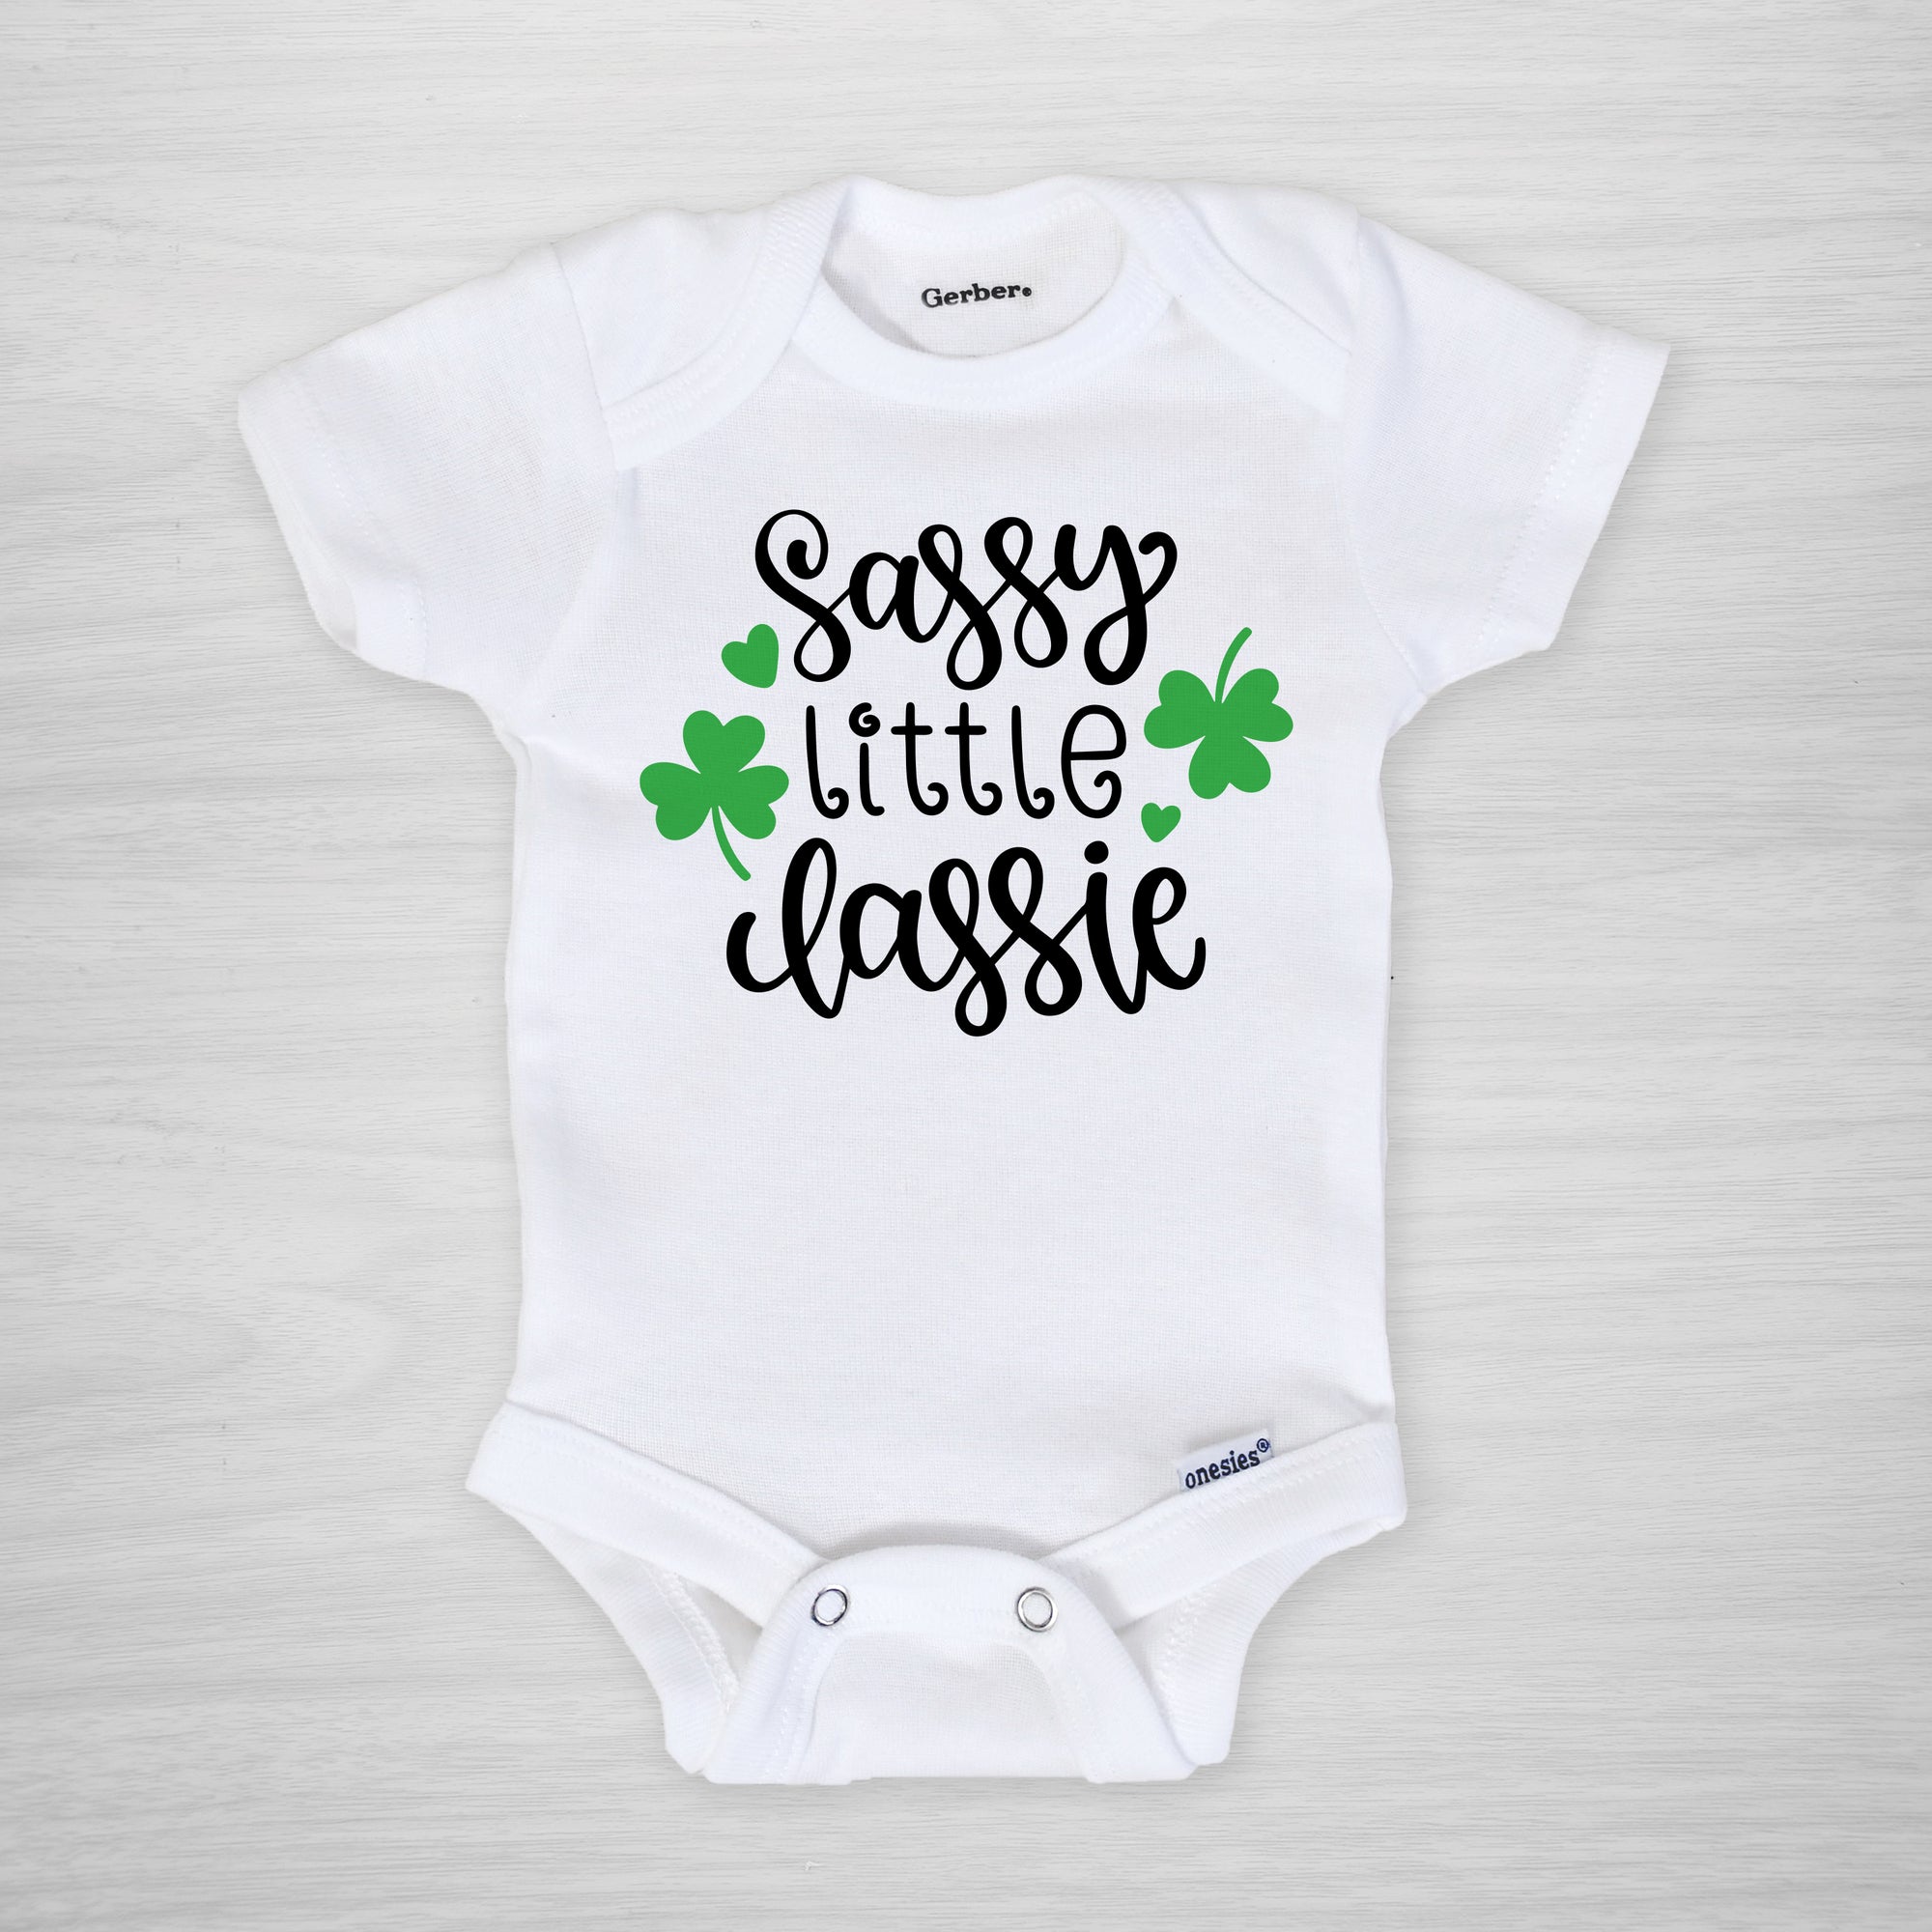 Saint Patrick's Day Onesie, "Sassy Little Lassie" Printed by Pipsy on genuine Gerber Onesies®